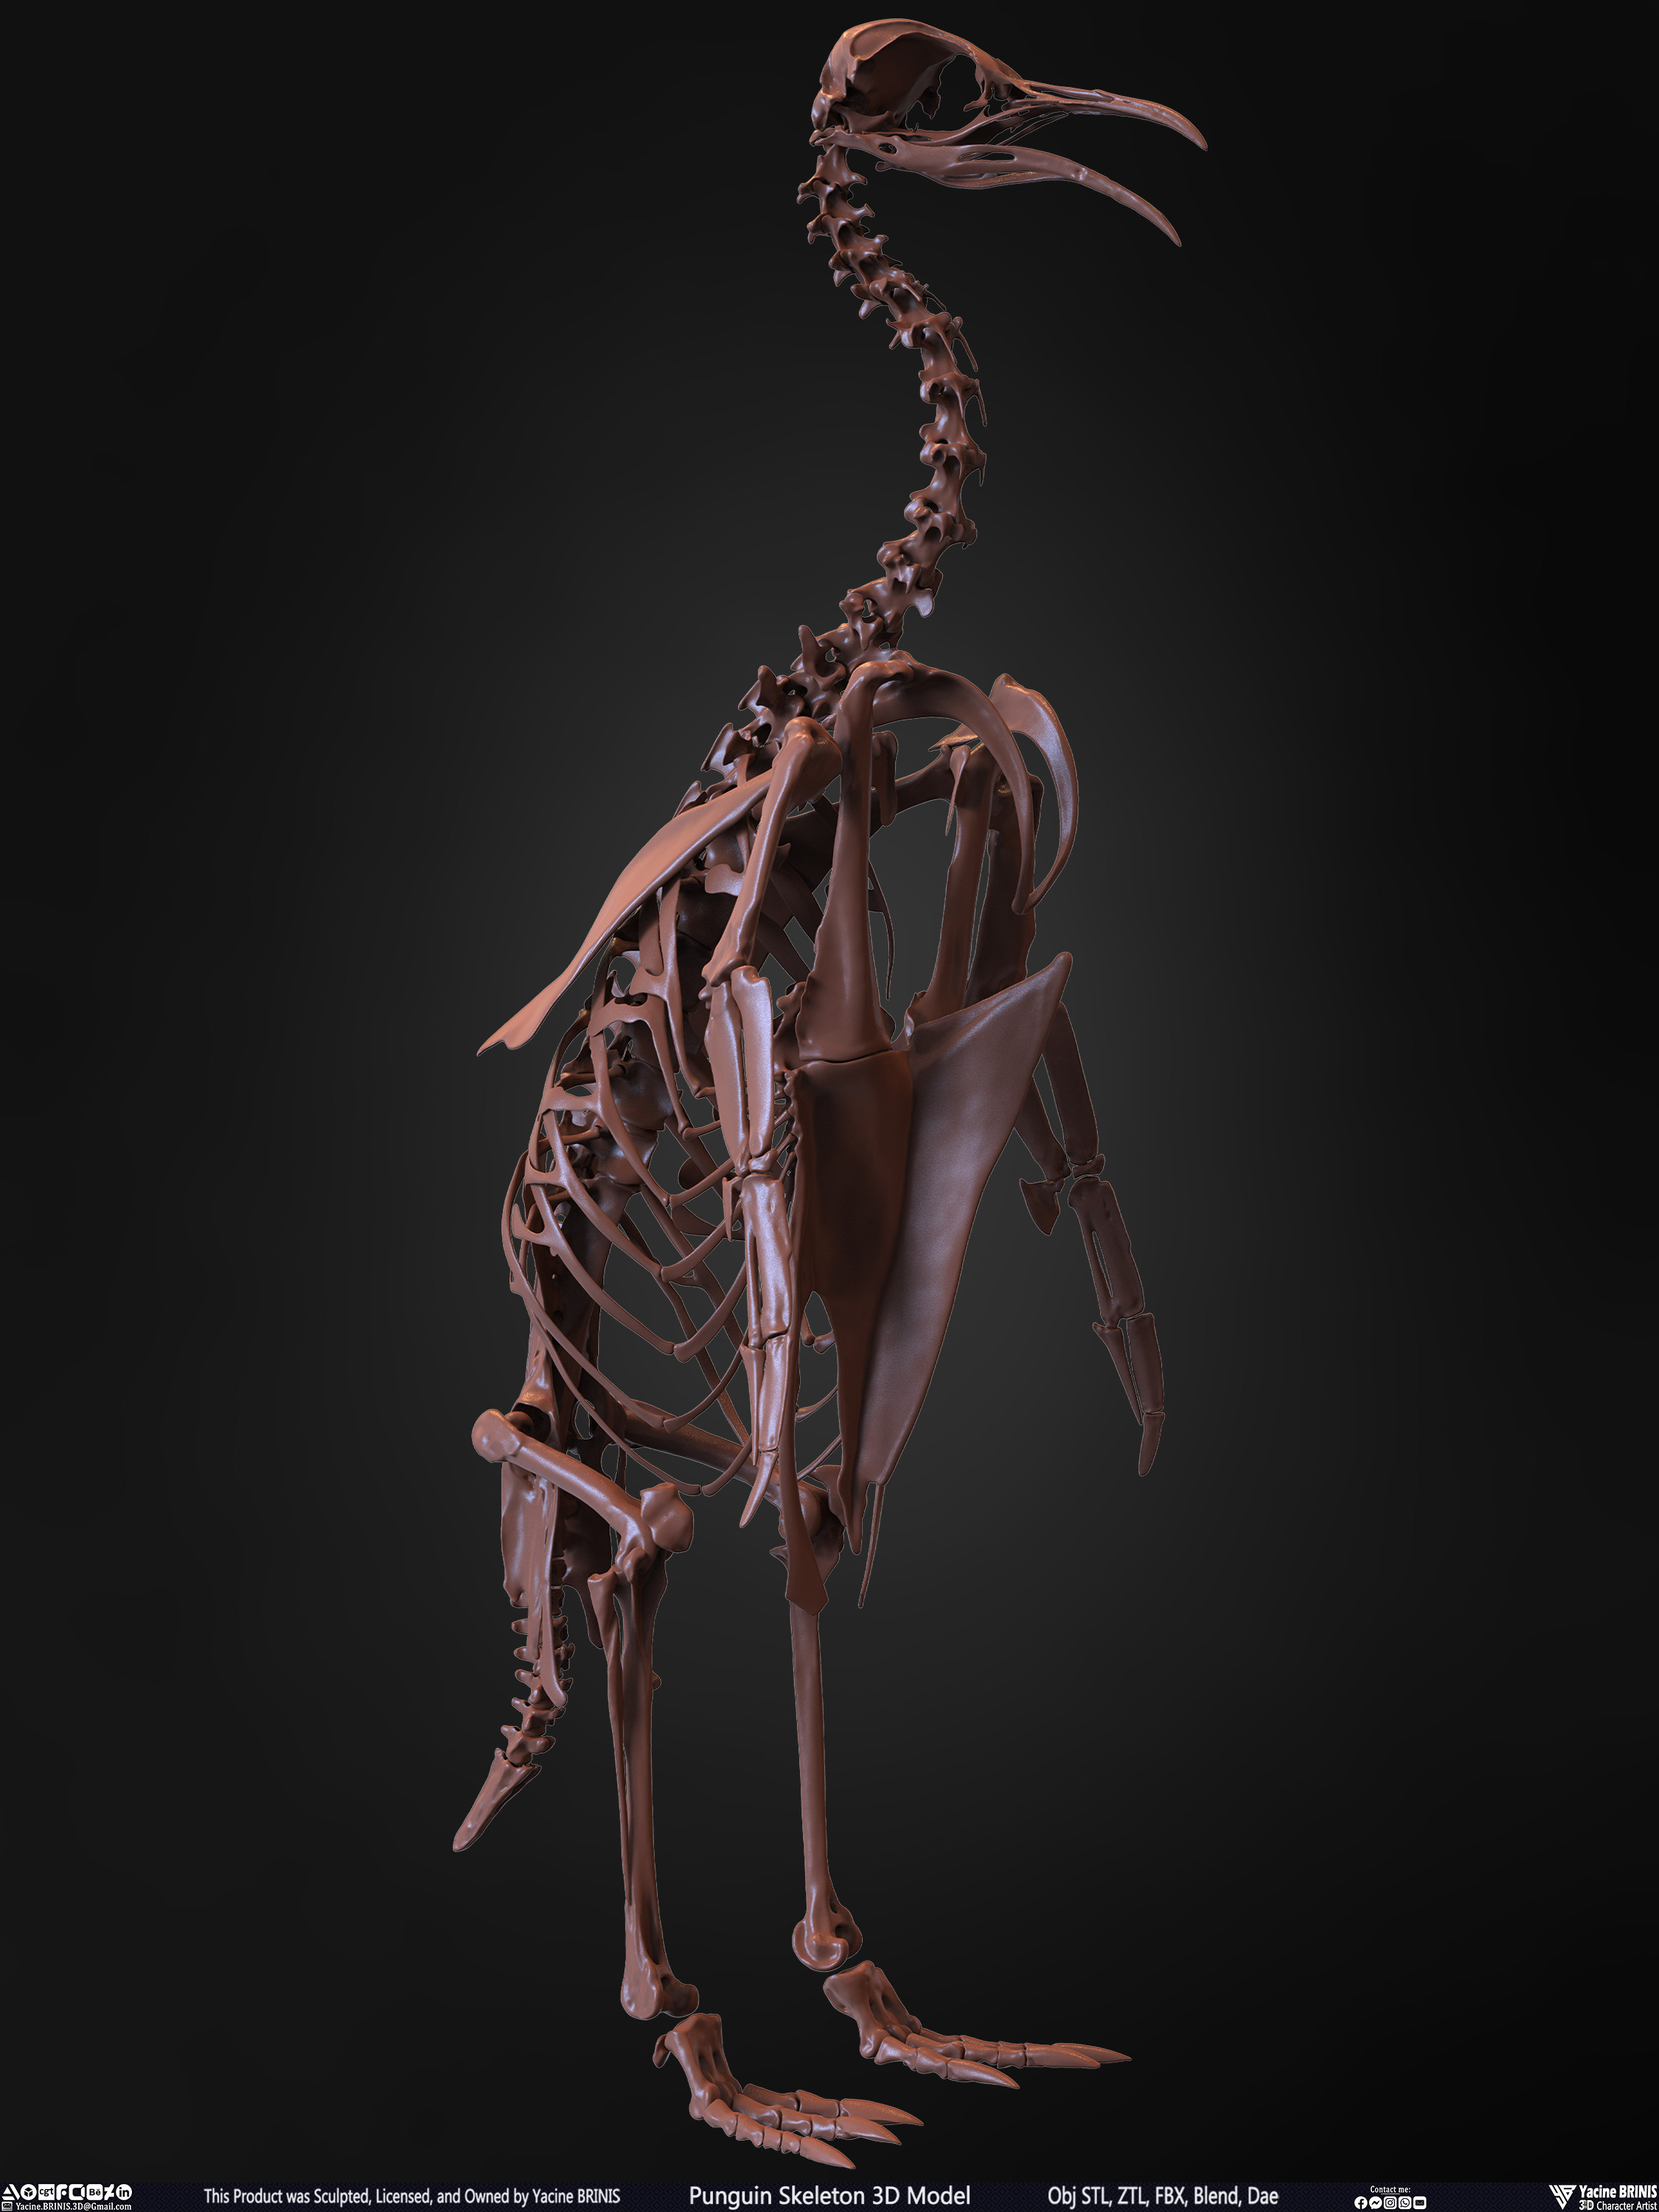 Penguin Skeleton 3D Model Sculpted by Yacine BRINIS Set 015